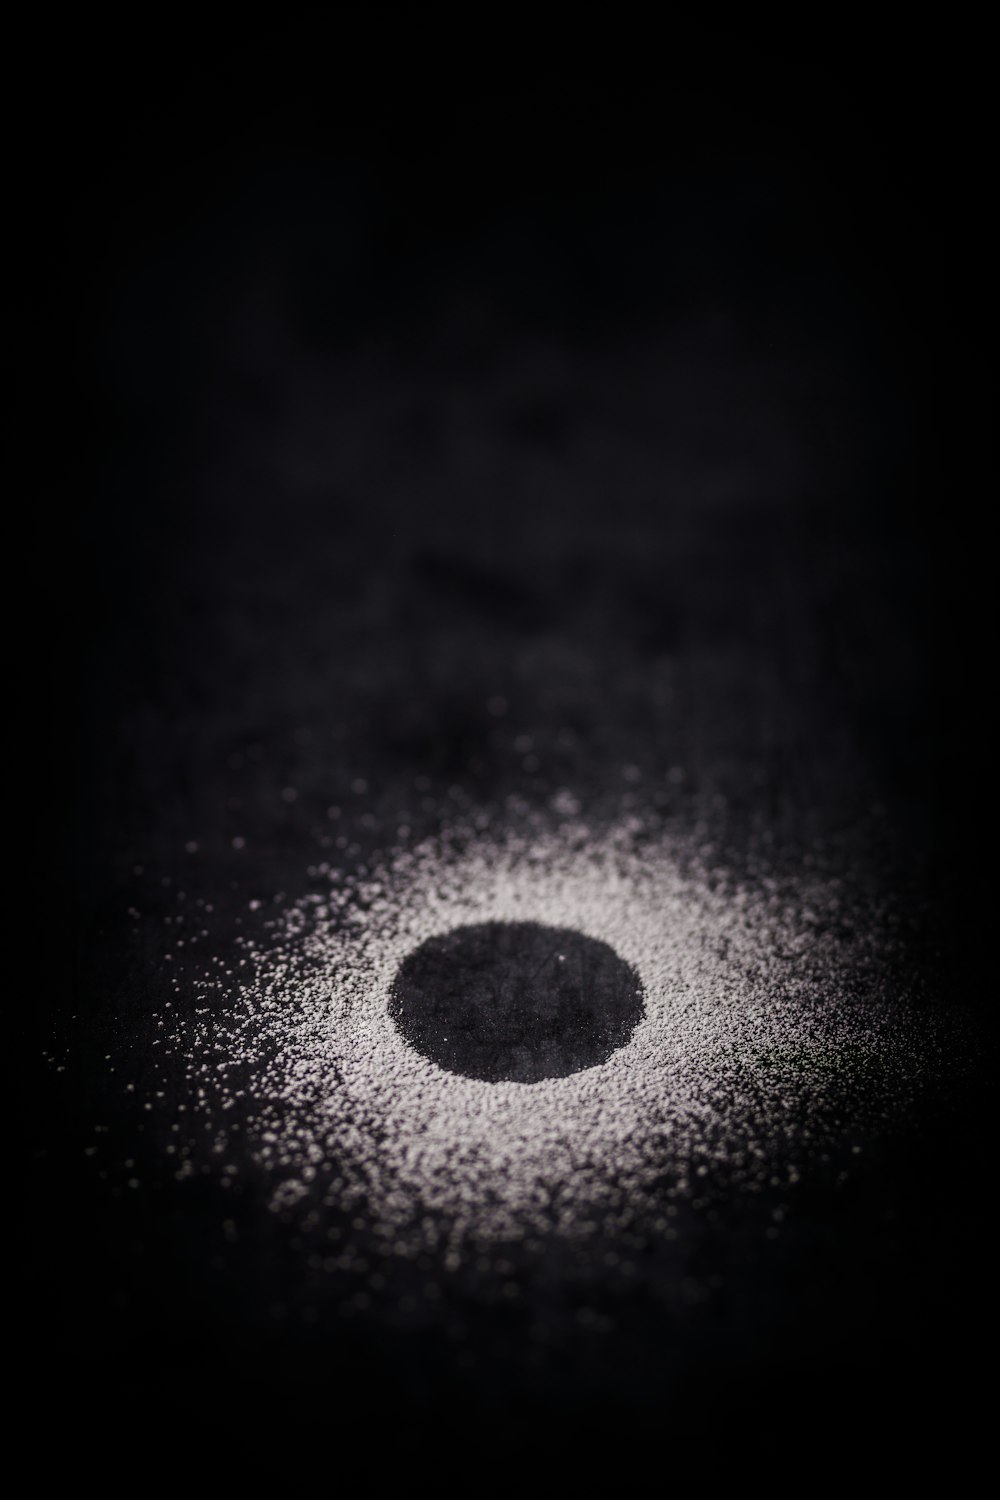 丸い物体の白黒写真